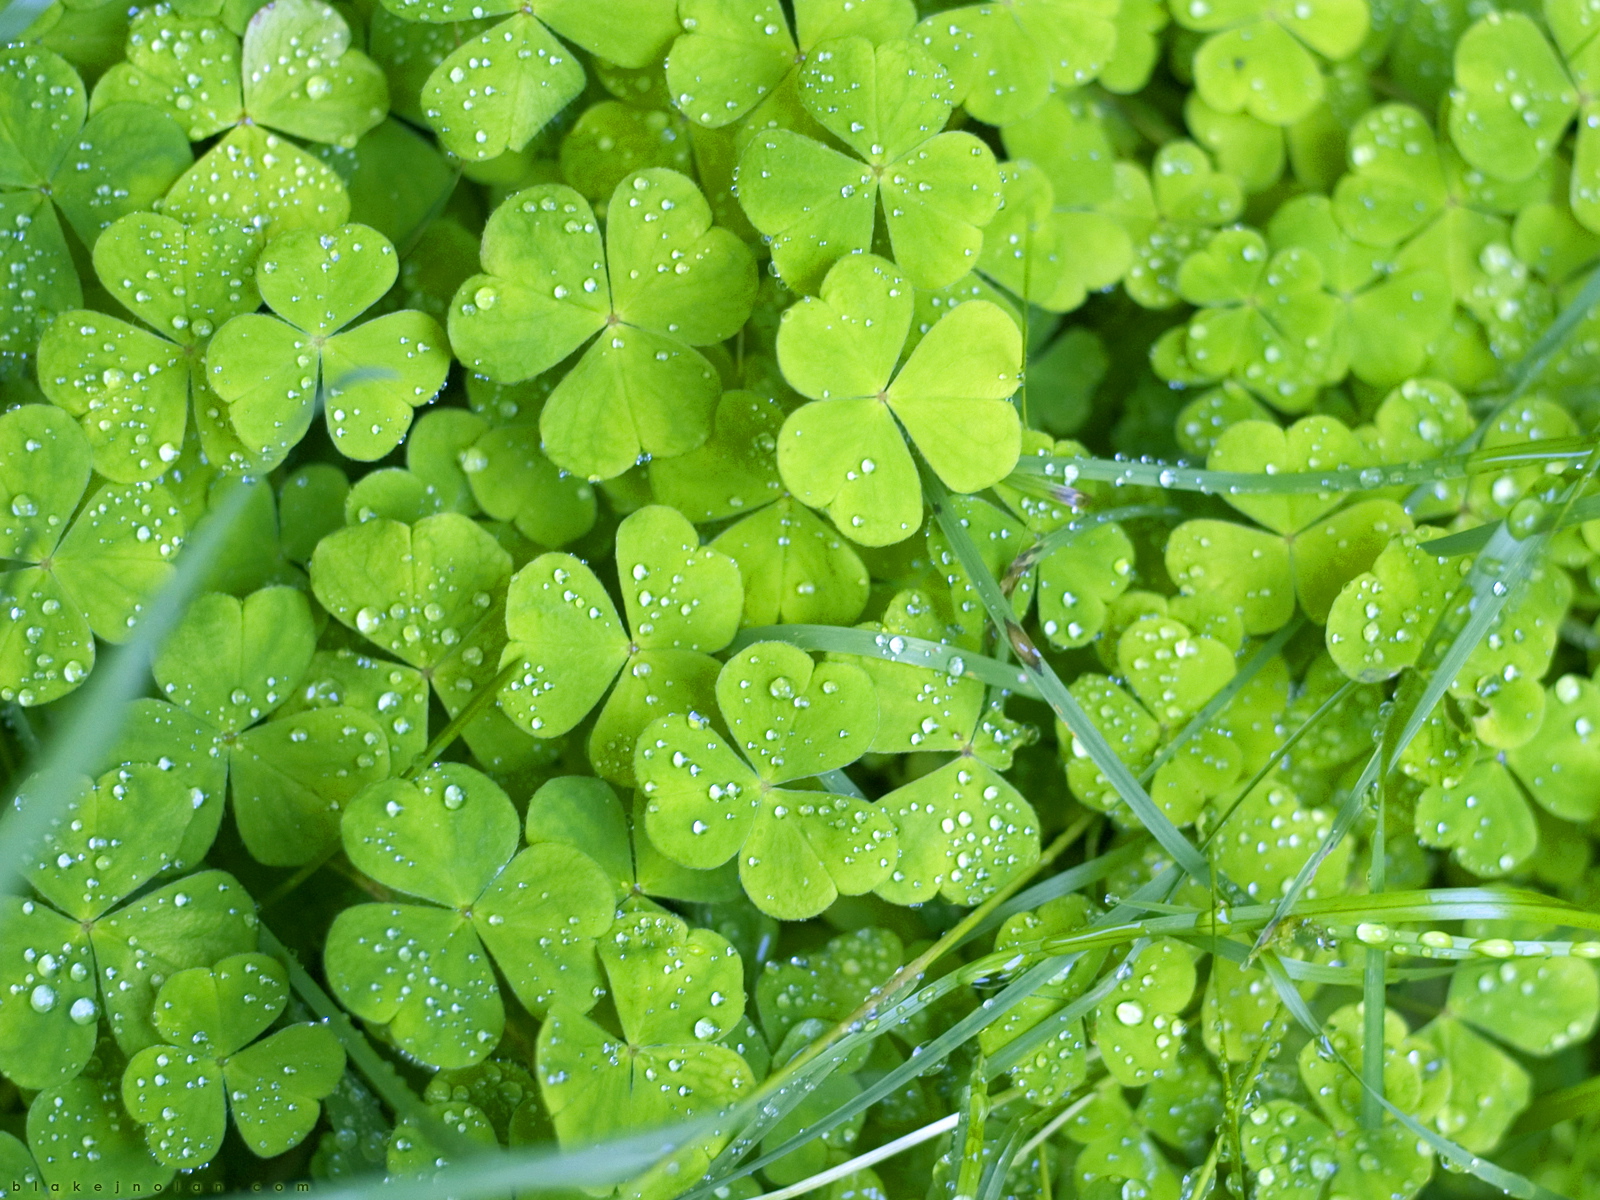 Hình nền Irish Clovers sẽ tạo cảm giác may mắn và hạnh phúc cho người dùng. Với những chiếc lá 3 lá được tô màu xanh tươi sáng, đây là một lựa chọn tuyệt vời để tạo nên không gian làm việc hoặc nơi giải trí trong mùa lễ St. Patrick.